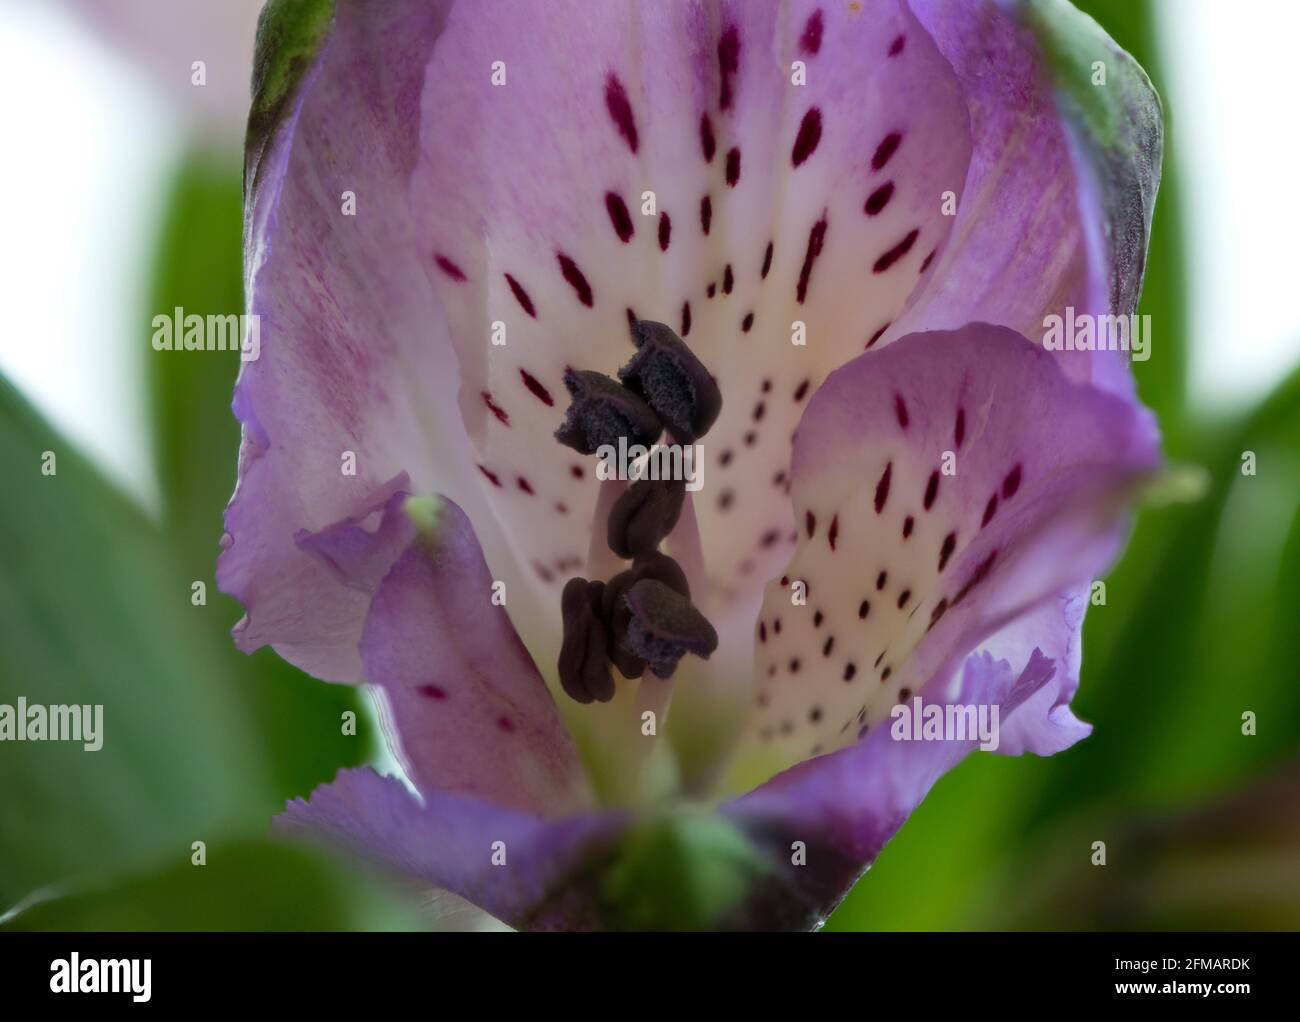 Gros plan d'une seule fleur d'Alstroemerias violette en utilisant la technique de superposition de mise au point. Banque D'Images